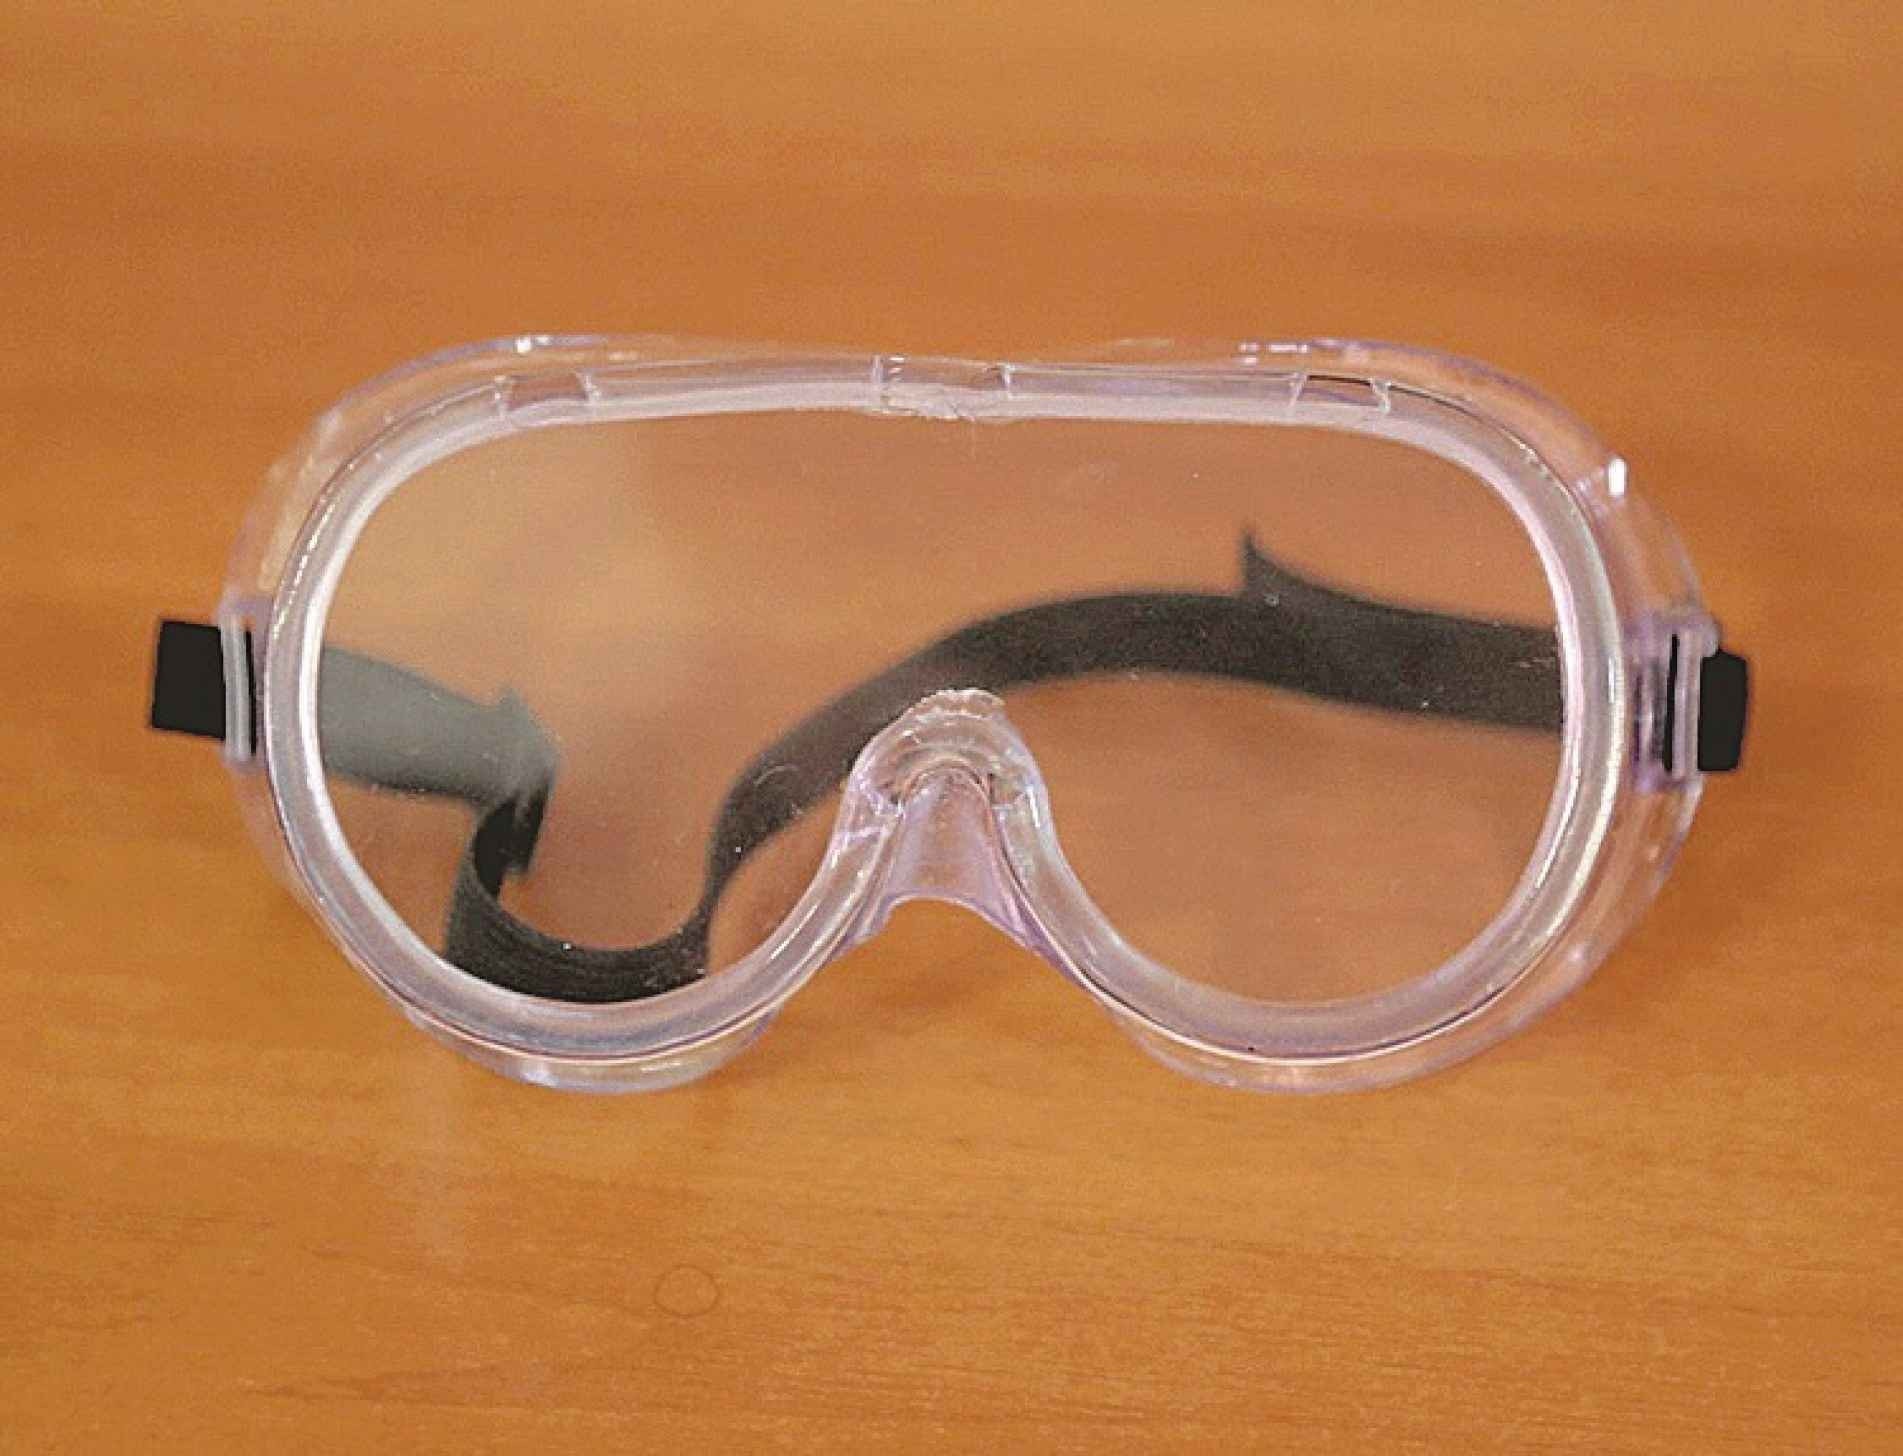 Os óculos de proteção foram doados pela multinacional Essilor, por meio do Instituto Ver e Viver